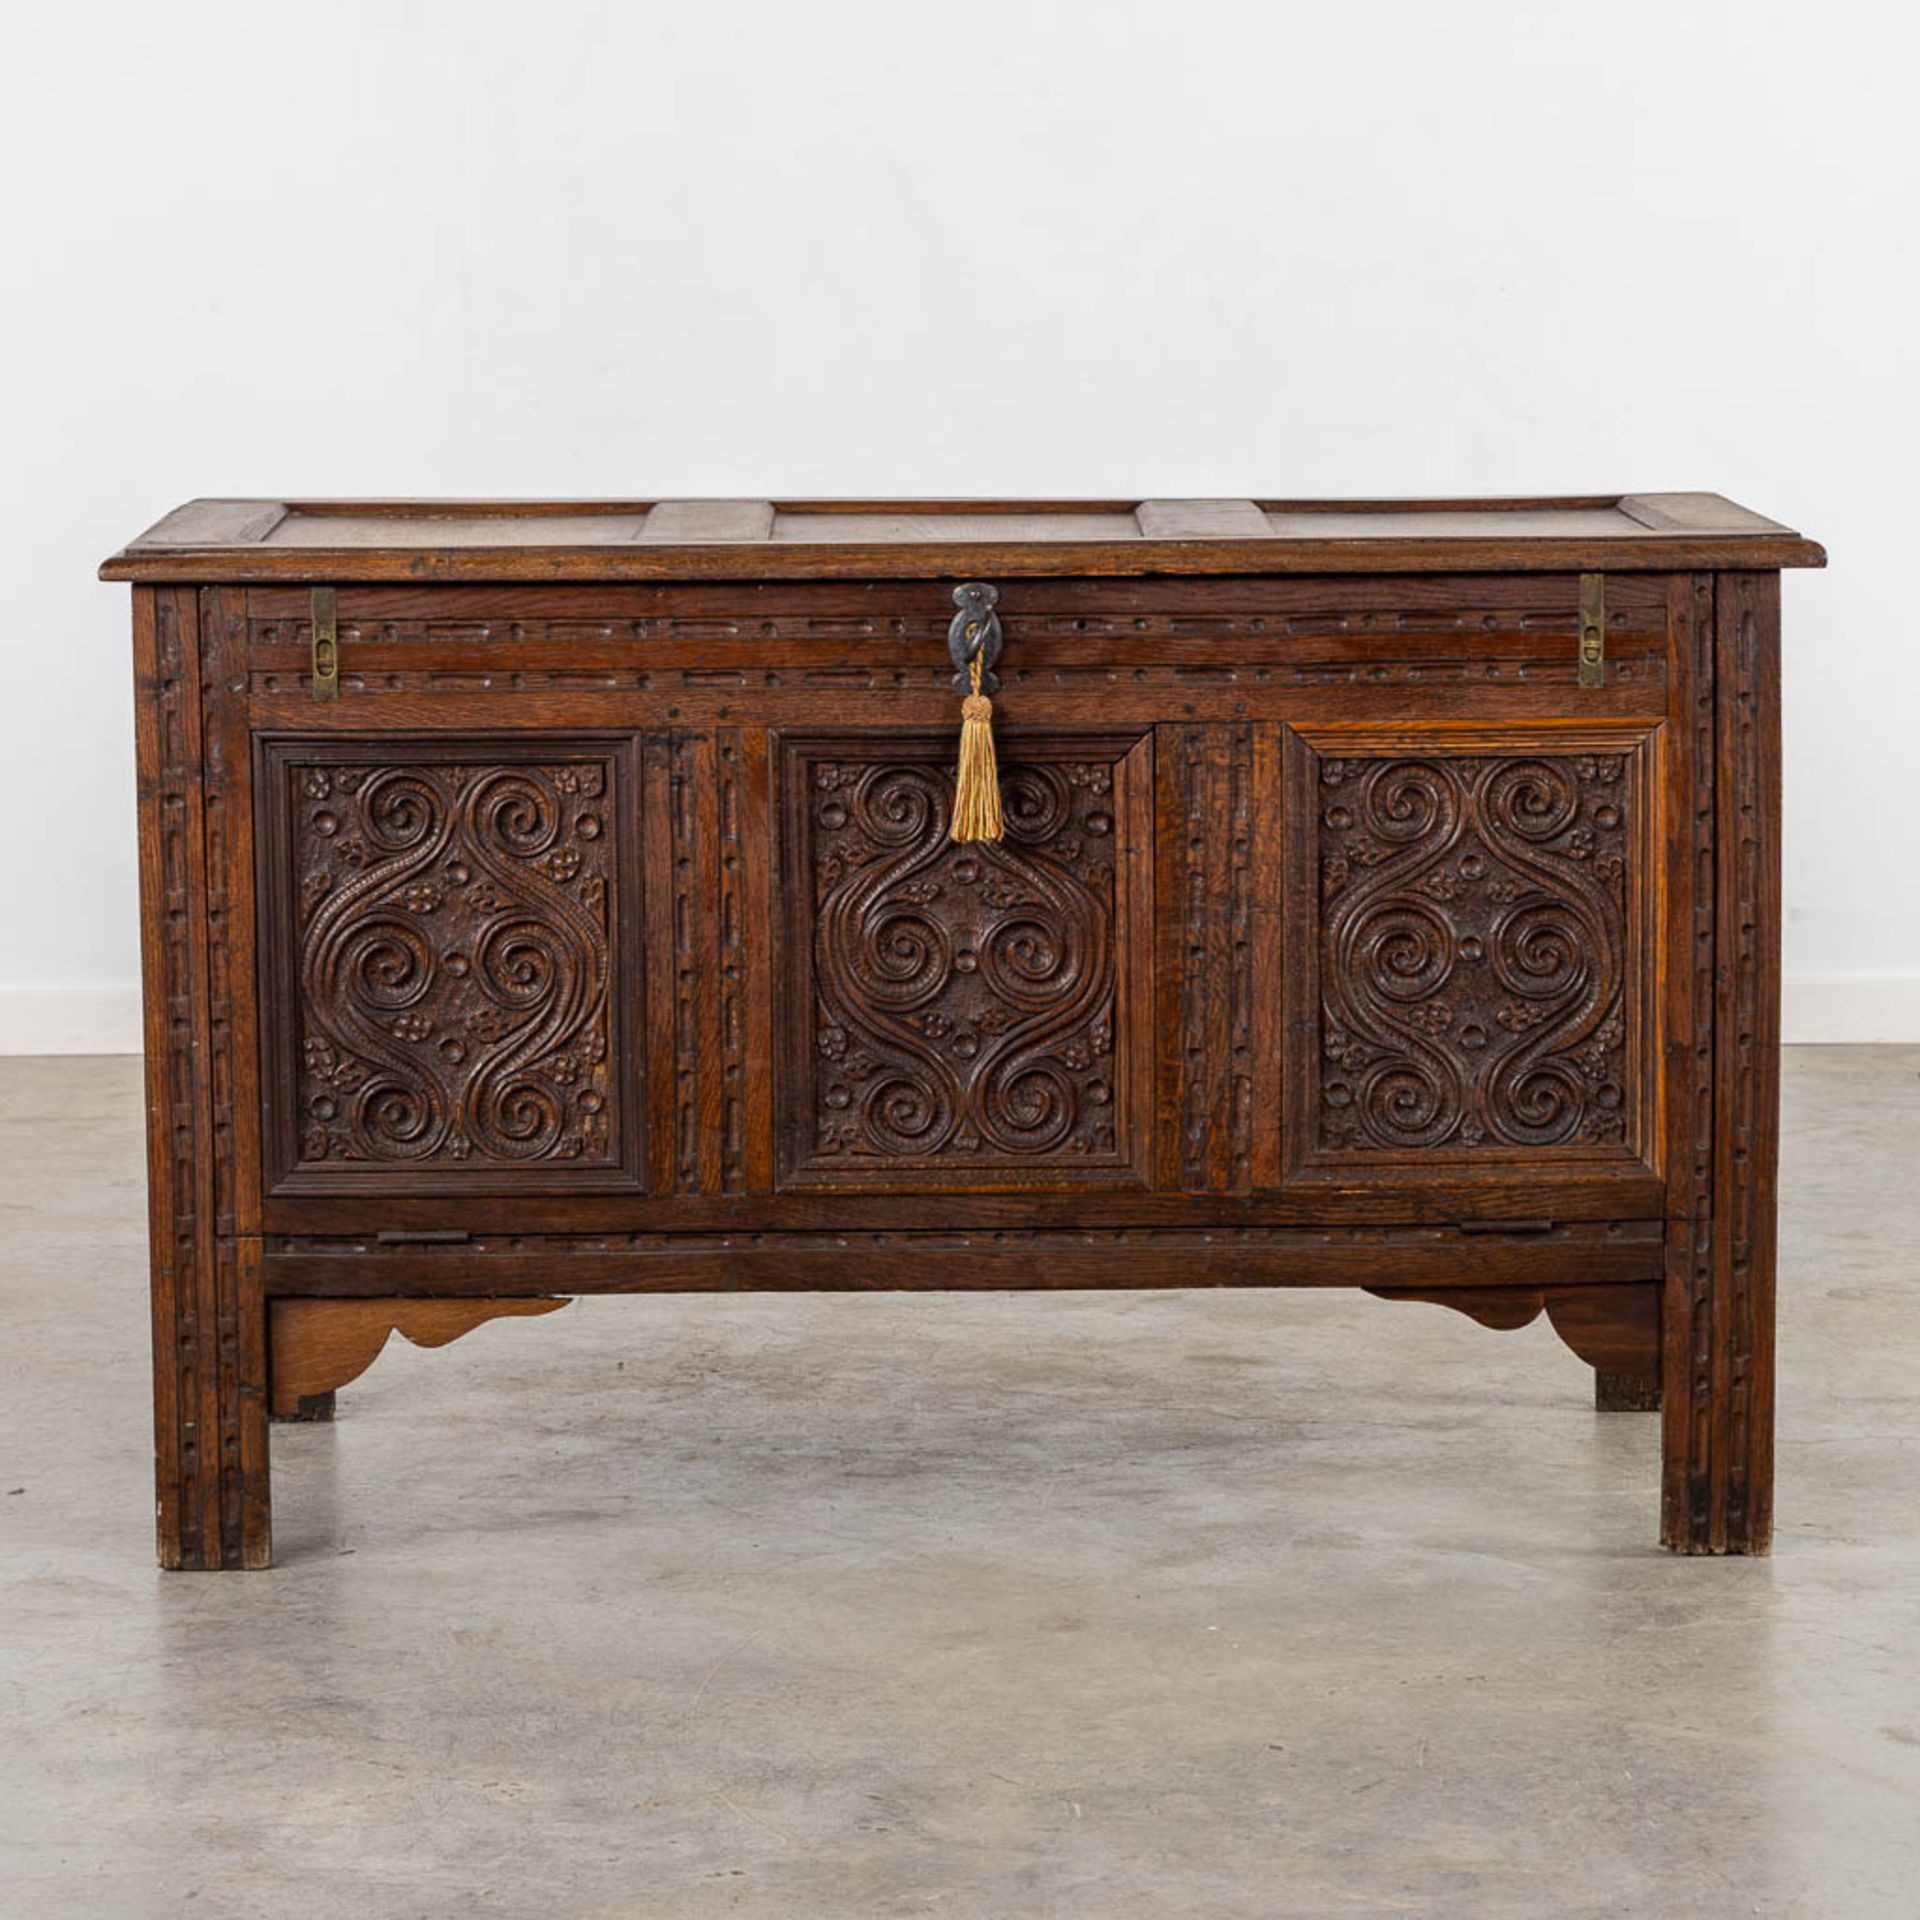 A chest with wood-sculptured panels. 19th C. (L:56 x W:120 x H:72 cm) - Bild 5 aus 11